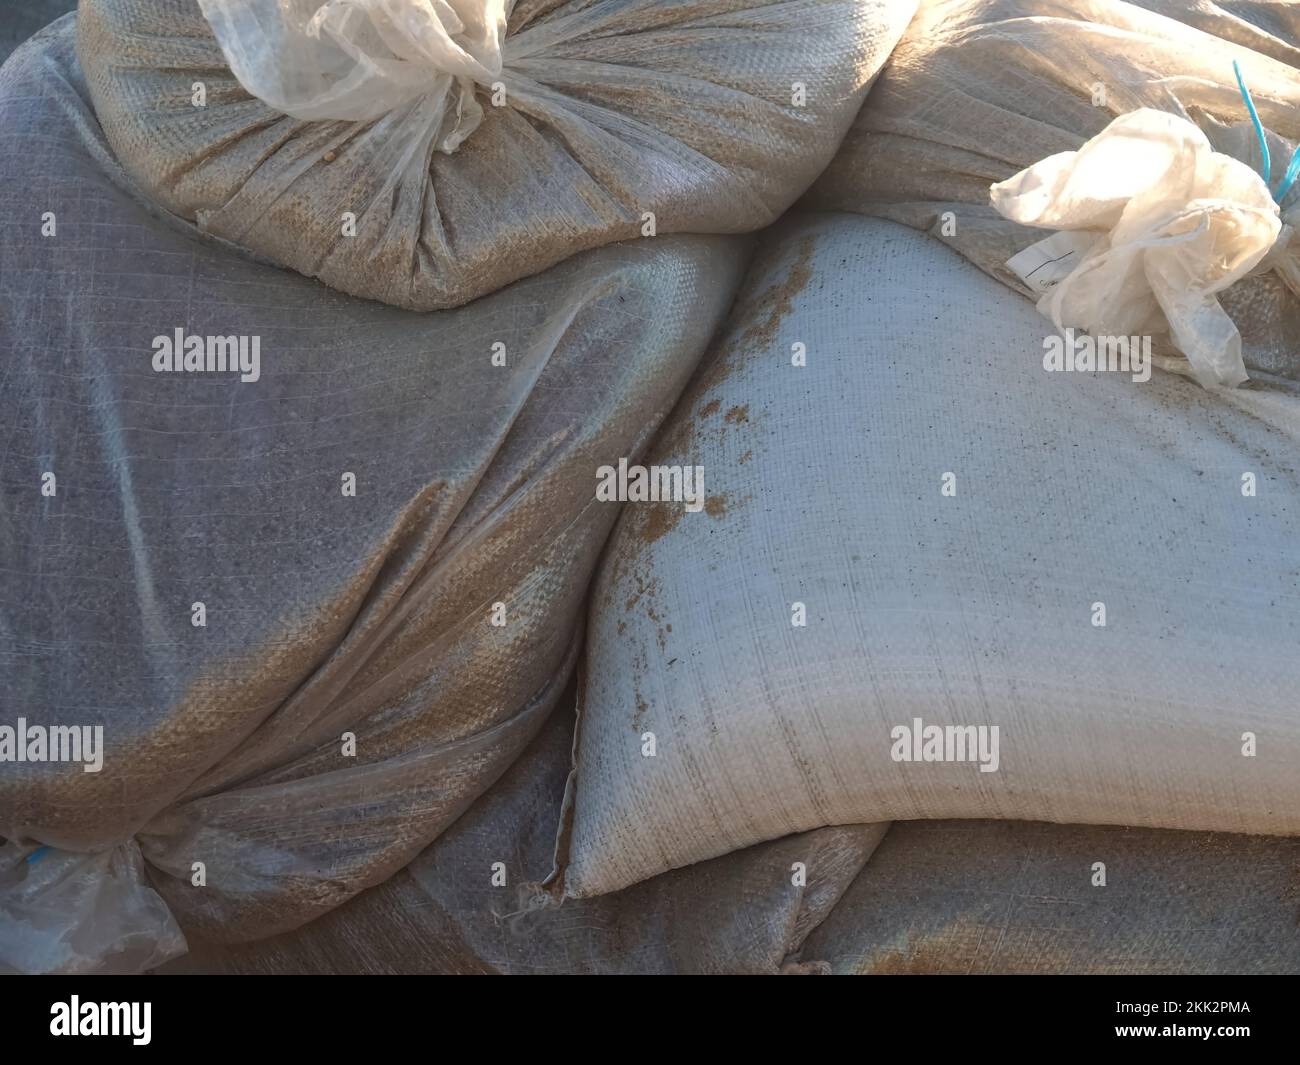 Mucchi di sacchi di sabbia riempiti di sabbia per proteggere contro alluvione Foto Stock